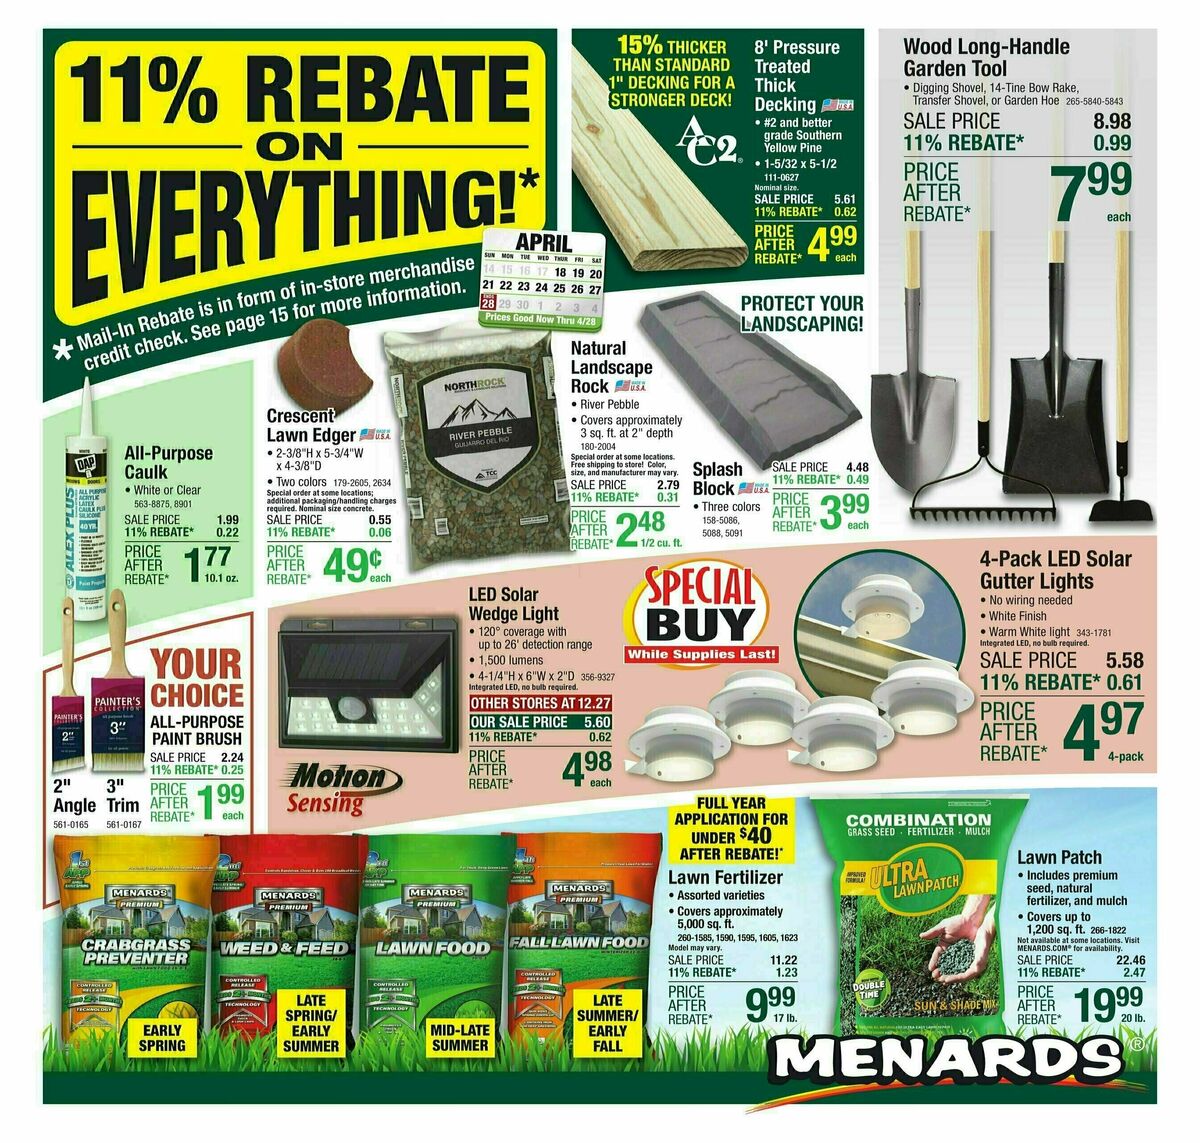 Menards 11% Rebate Sale Weekly Ad from April 17